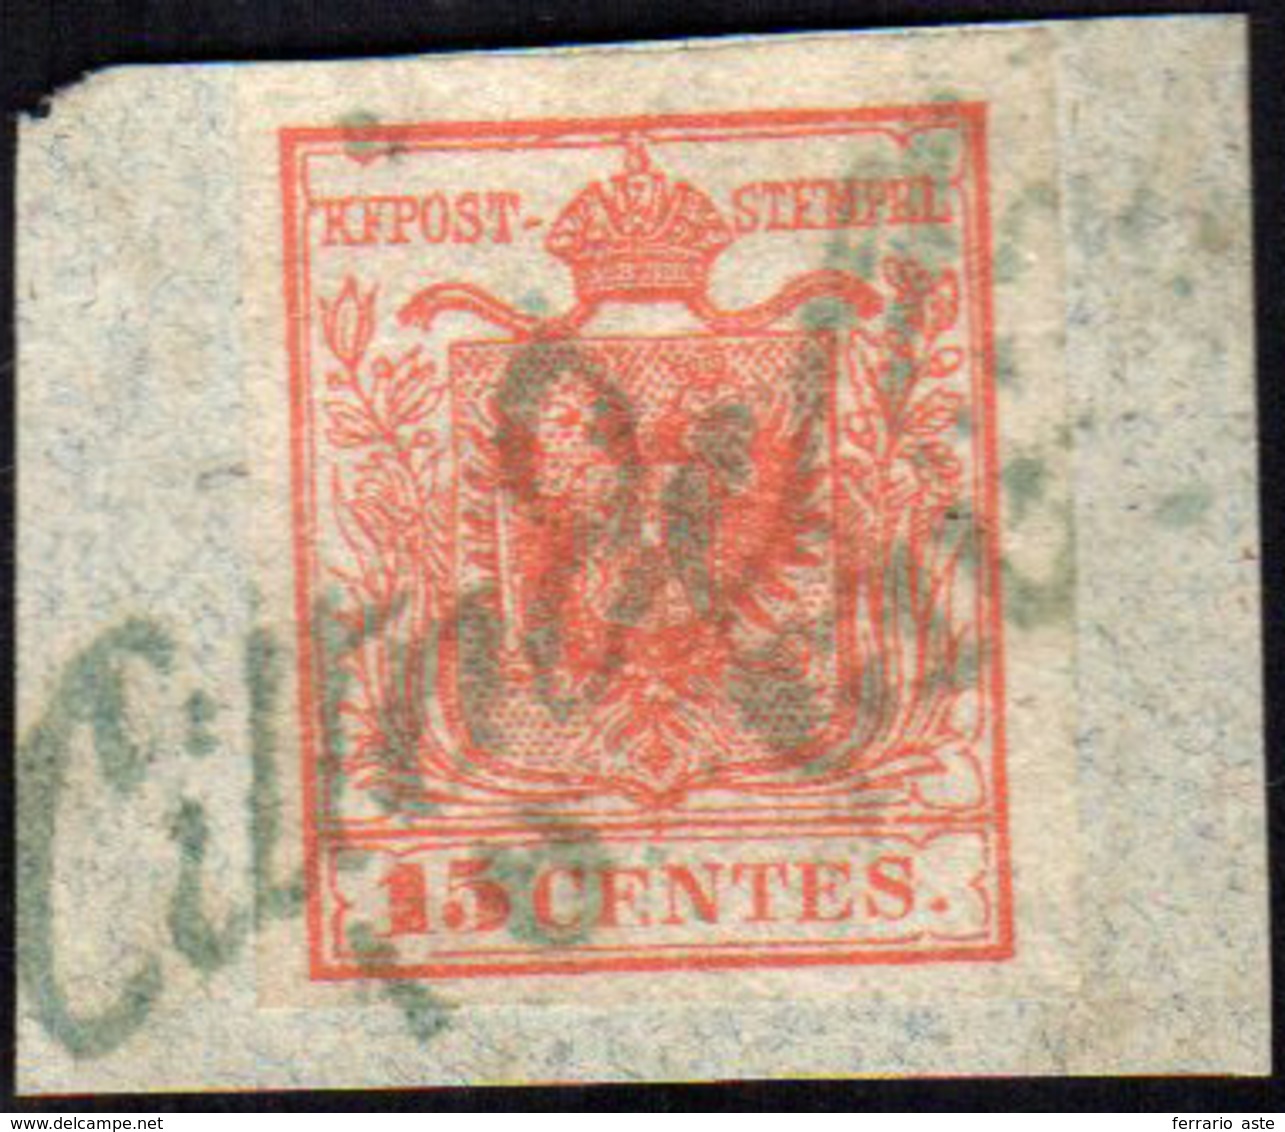 CITTADELLA, Cor. Azzurro Punti R1 - 15 Cent. (3), Perfetto, Usato Su Piccolo Frammento Il 10/6/1850.... - Lombardy-Venetia